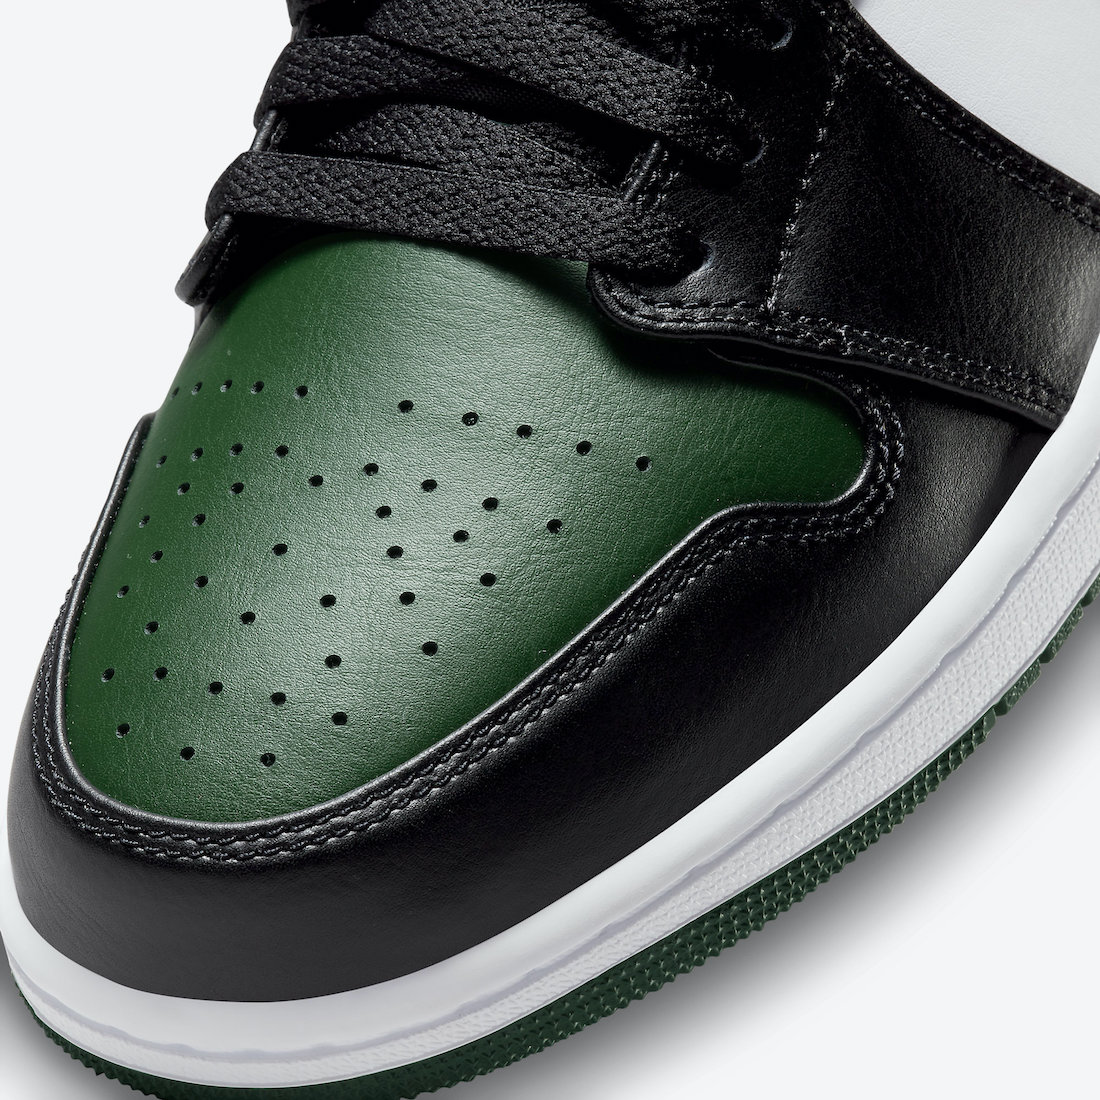 Air Jordan 1 Low Green Toe 553558-371 Release Date